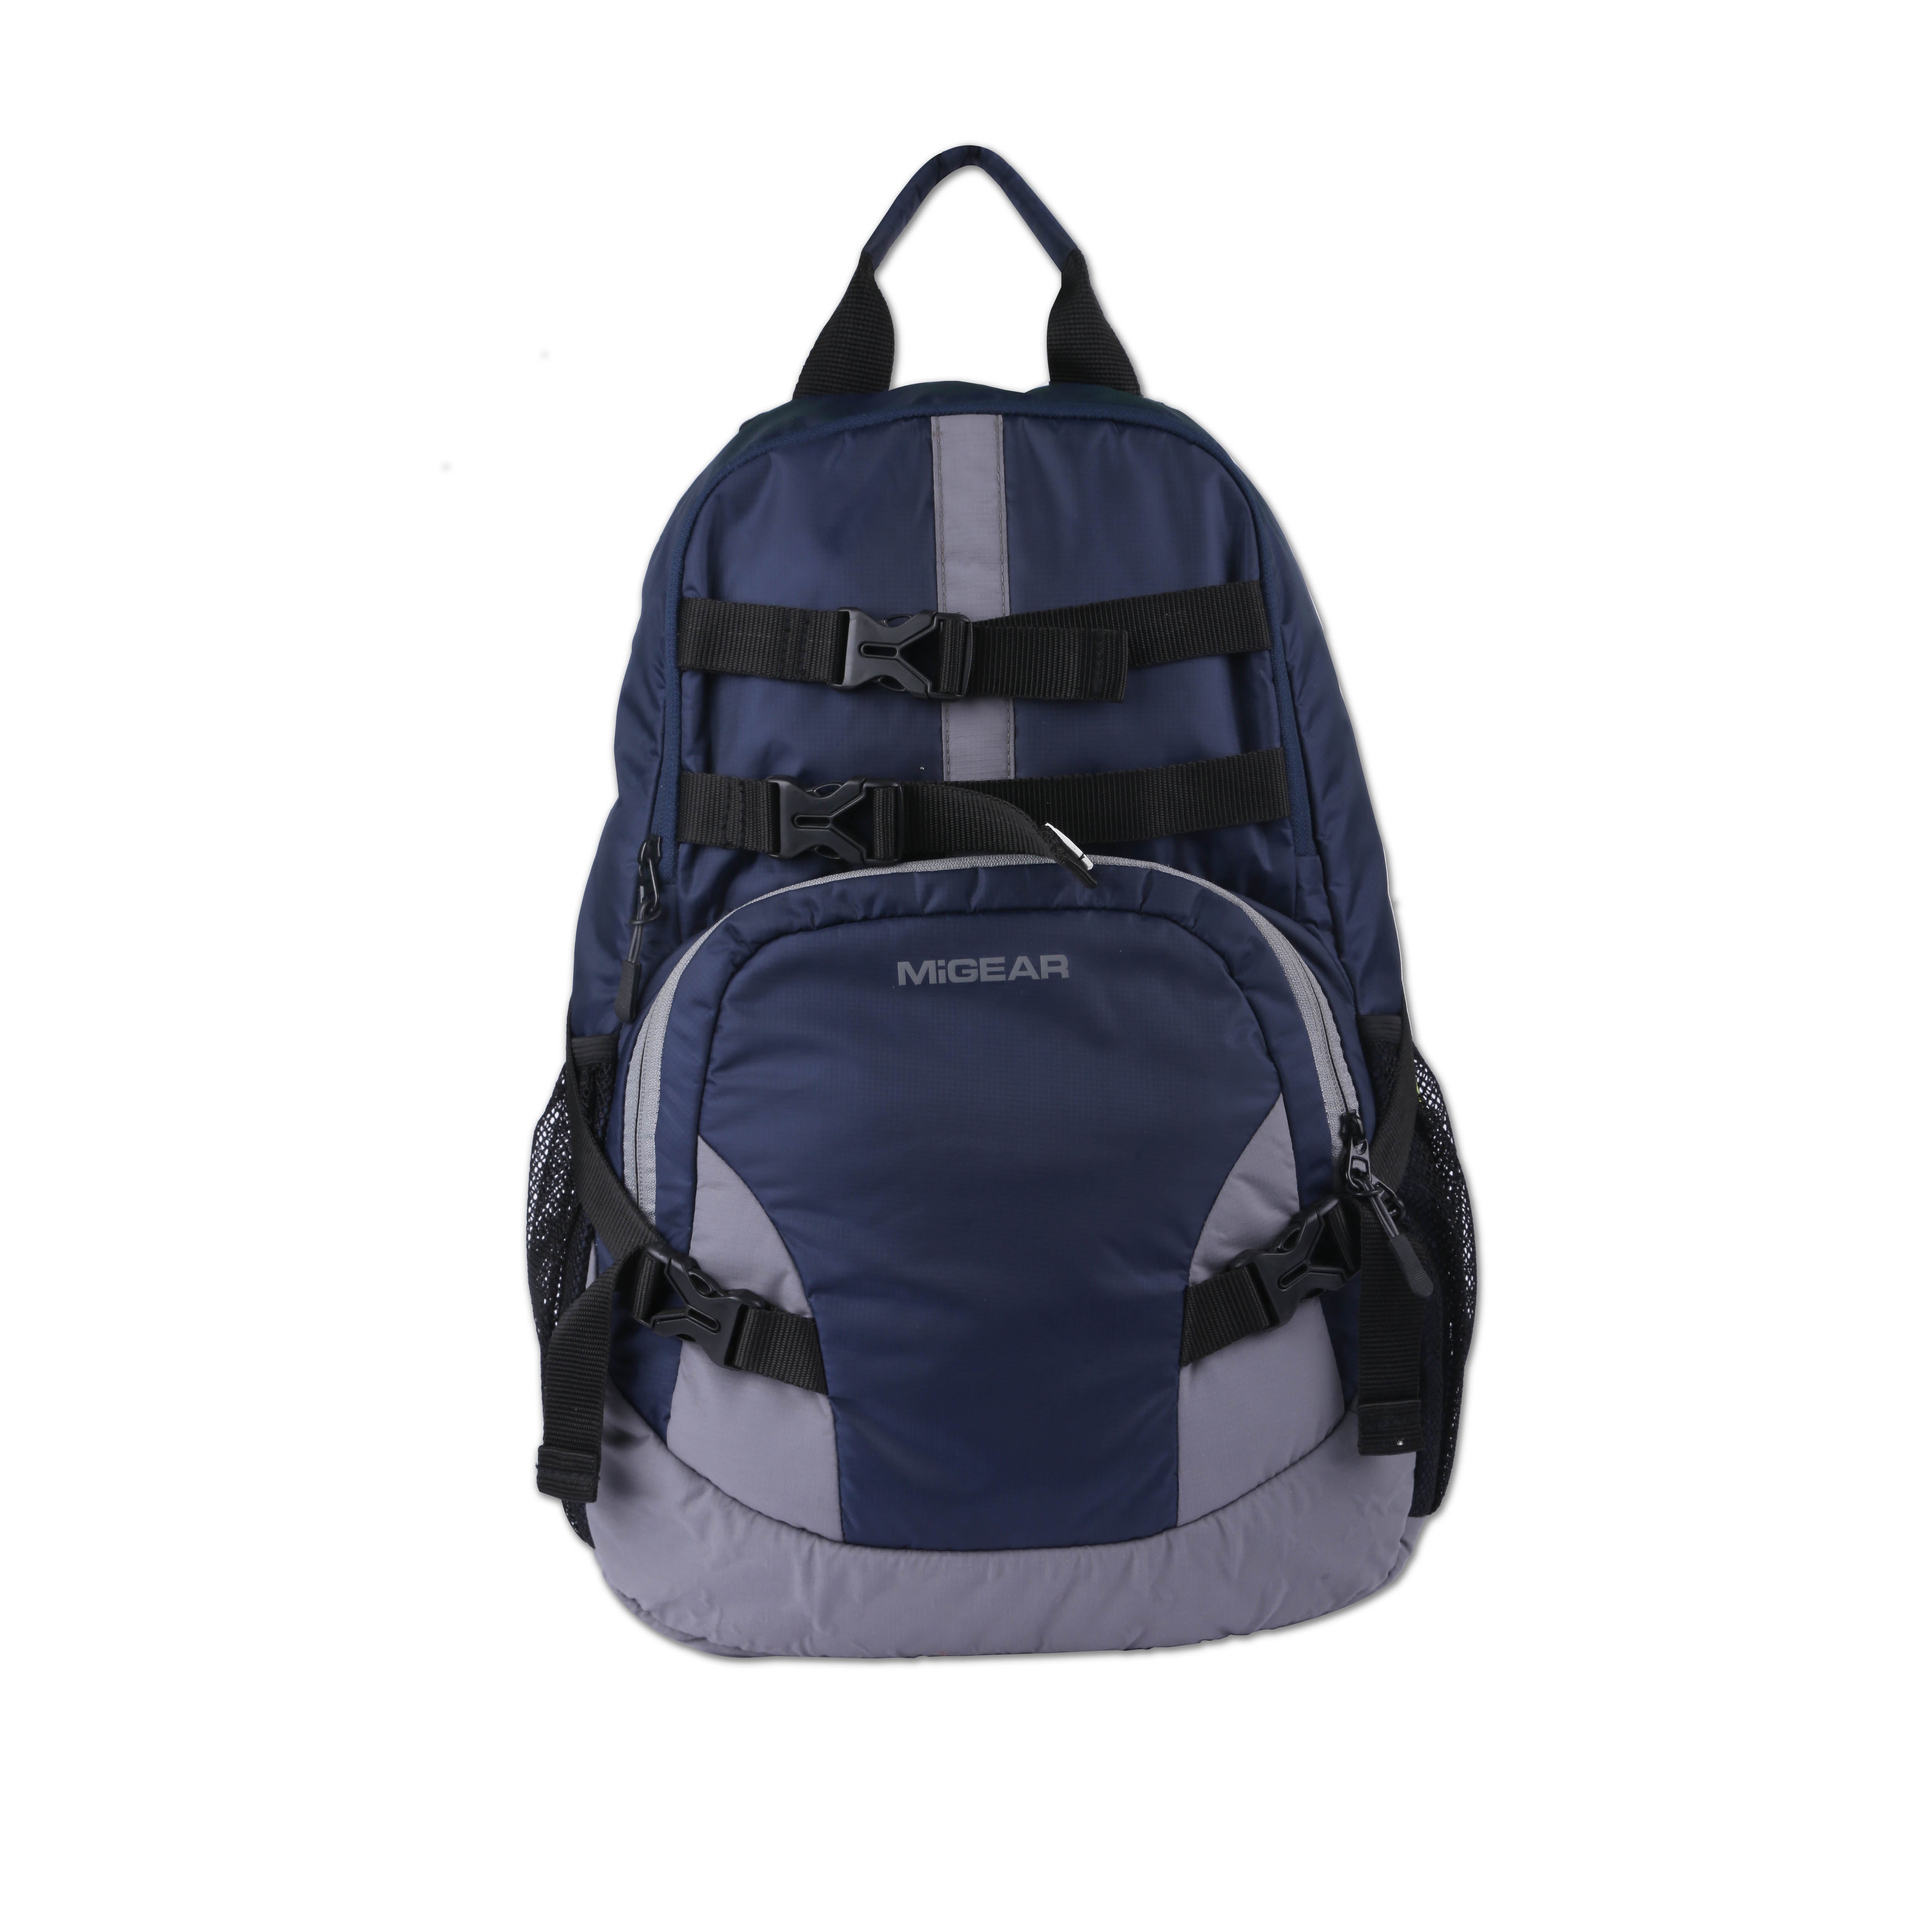 TrekPak Backpack